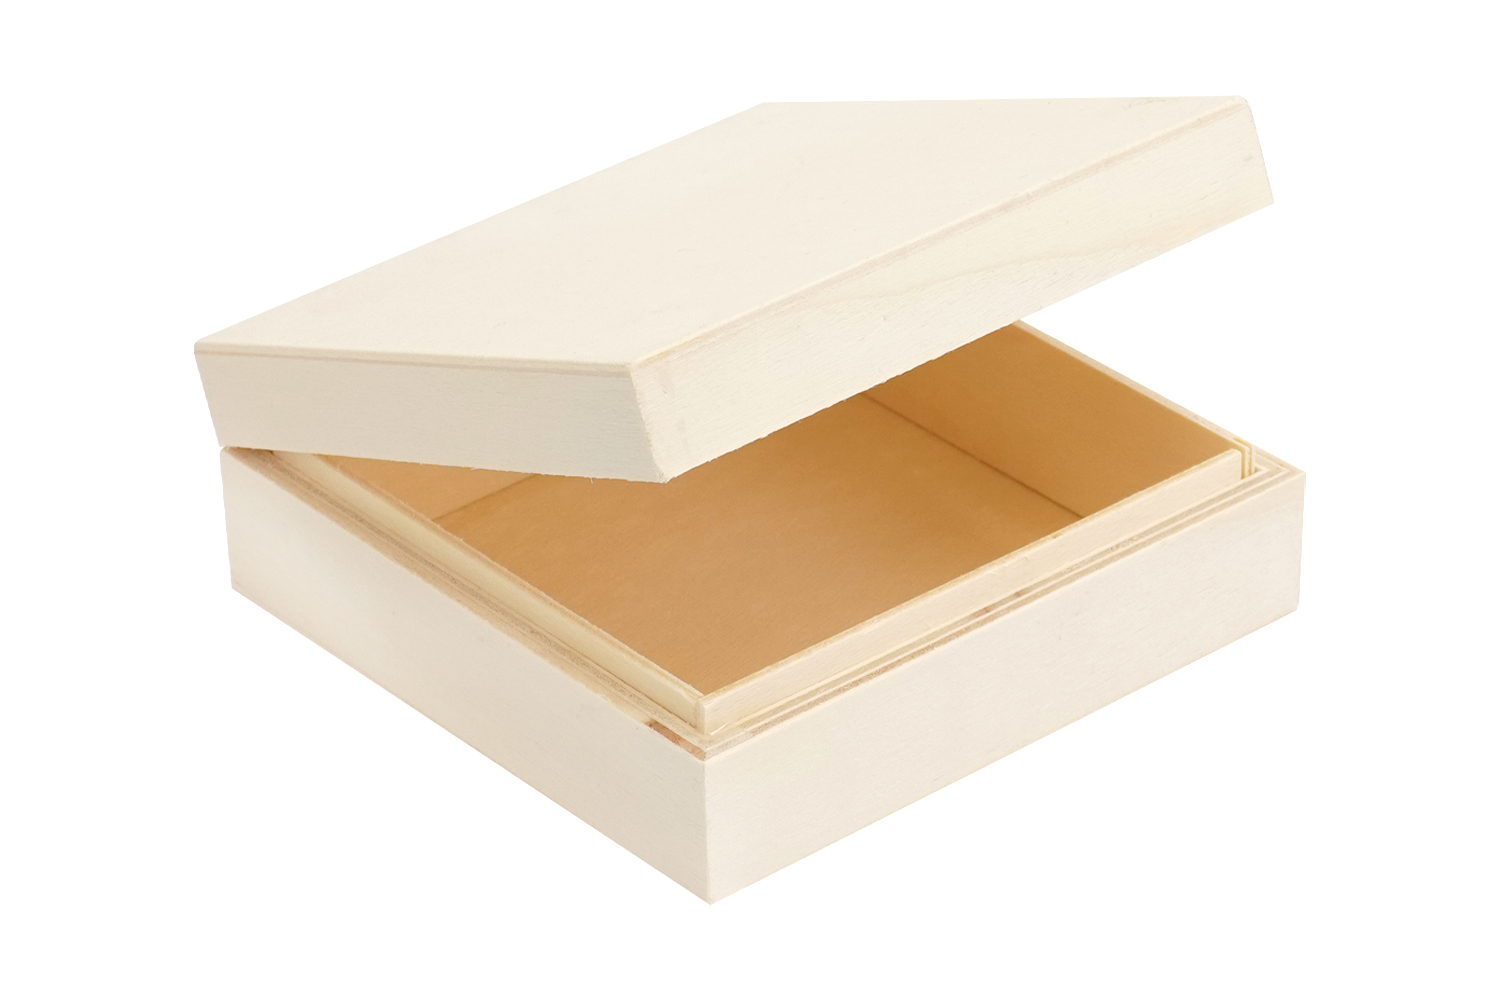 Boîte cadeau carrée en carton bois avec ruban